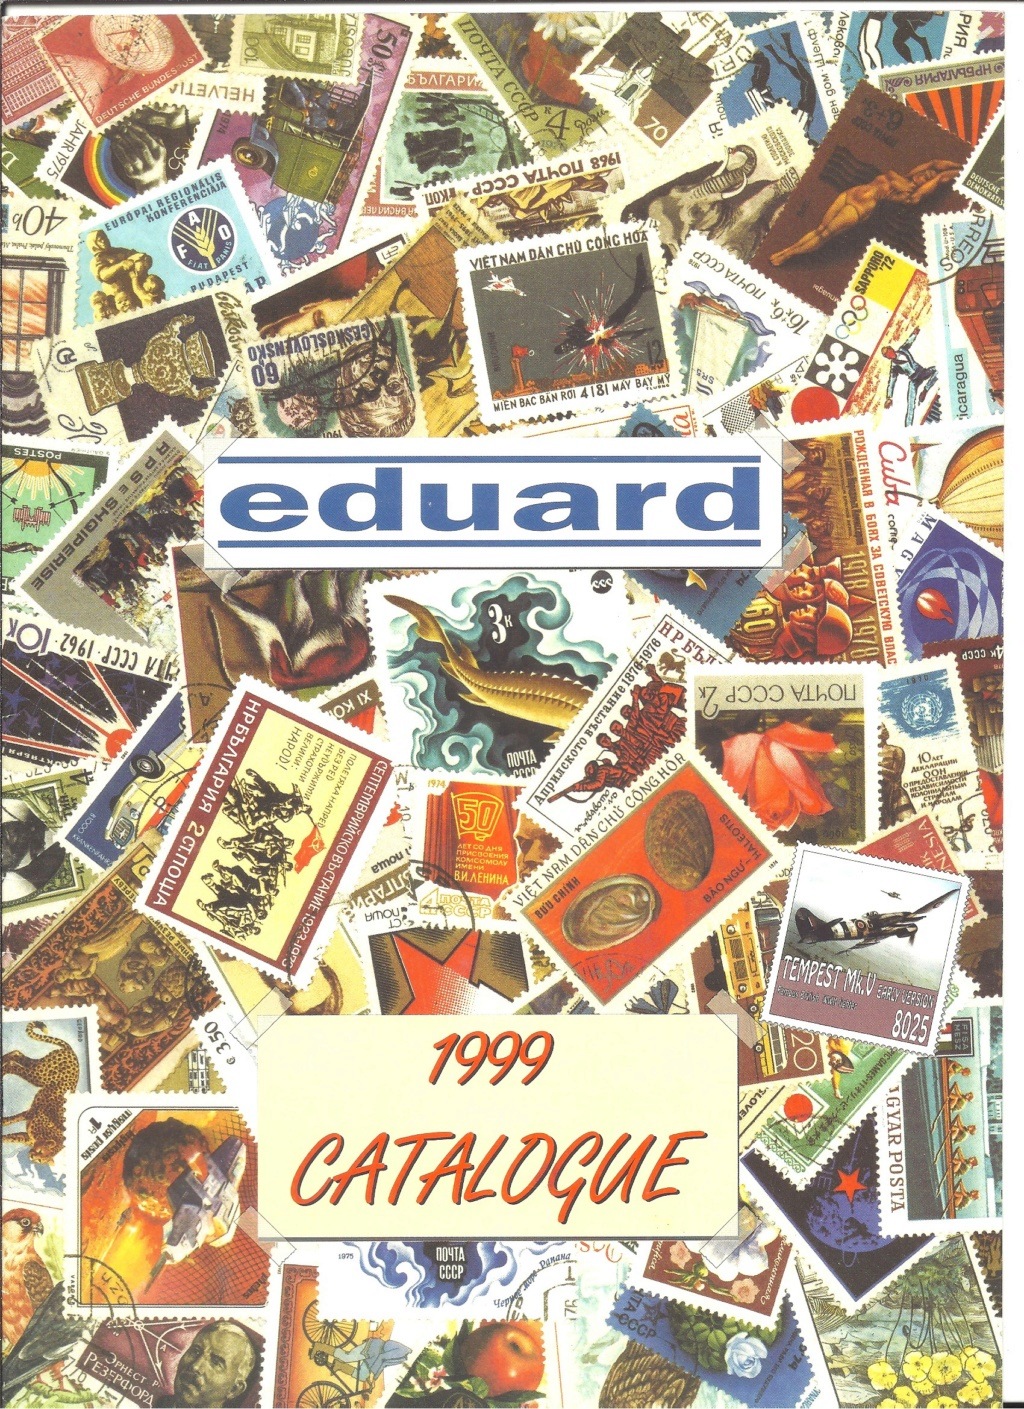 [EDUARD 1999] Catalogue 1999 Eduard31